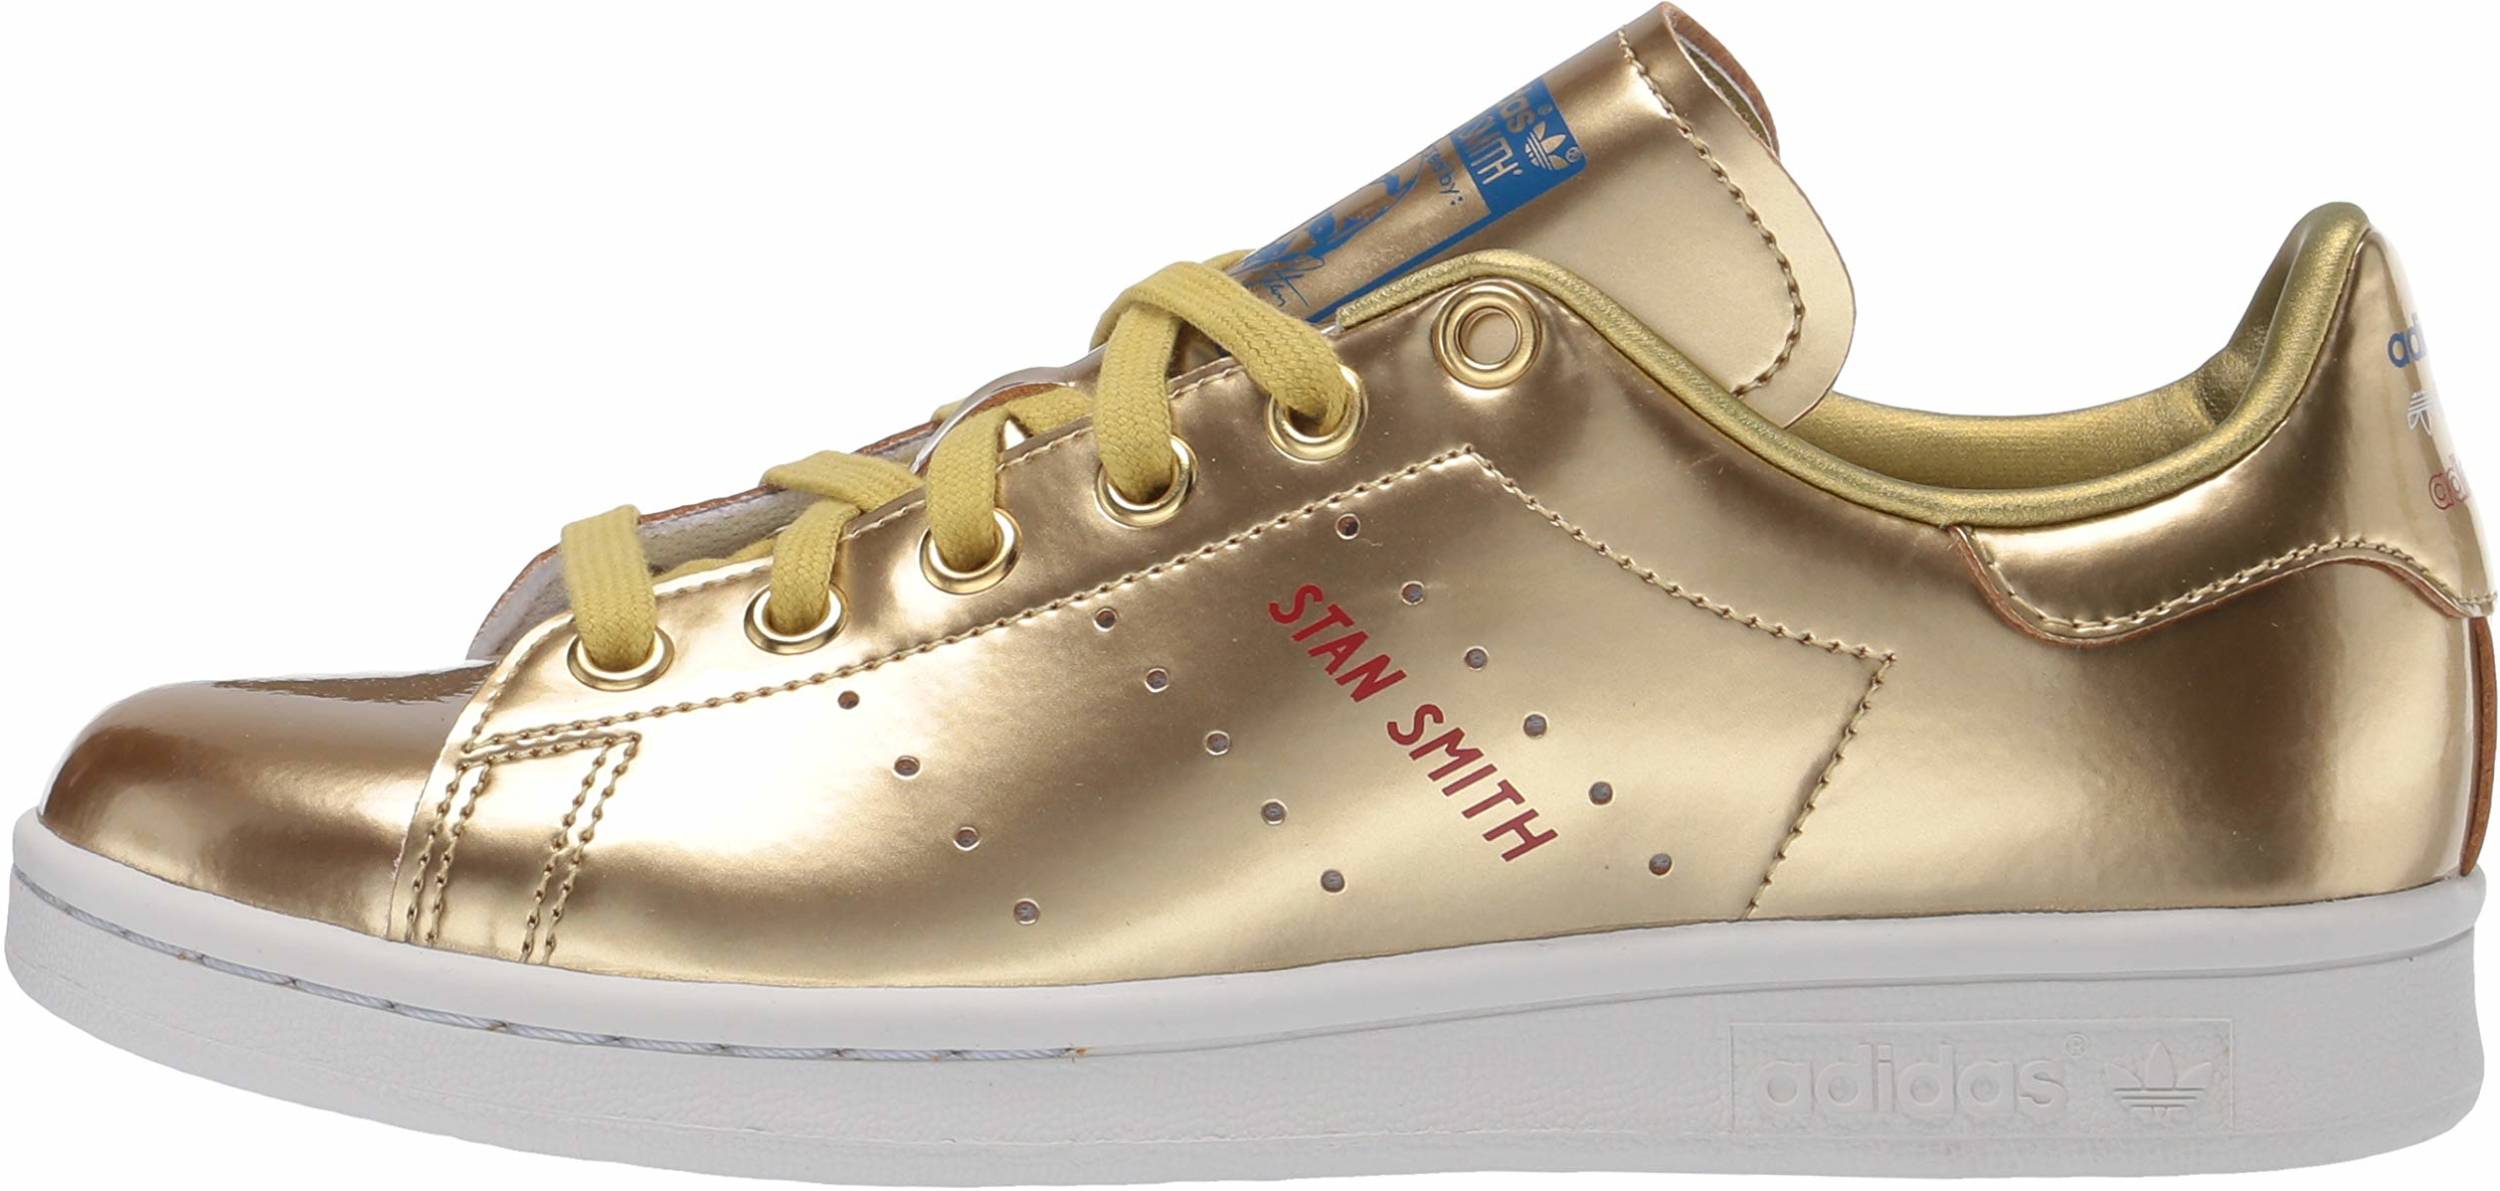 golden sneakers for women